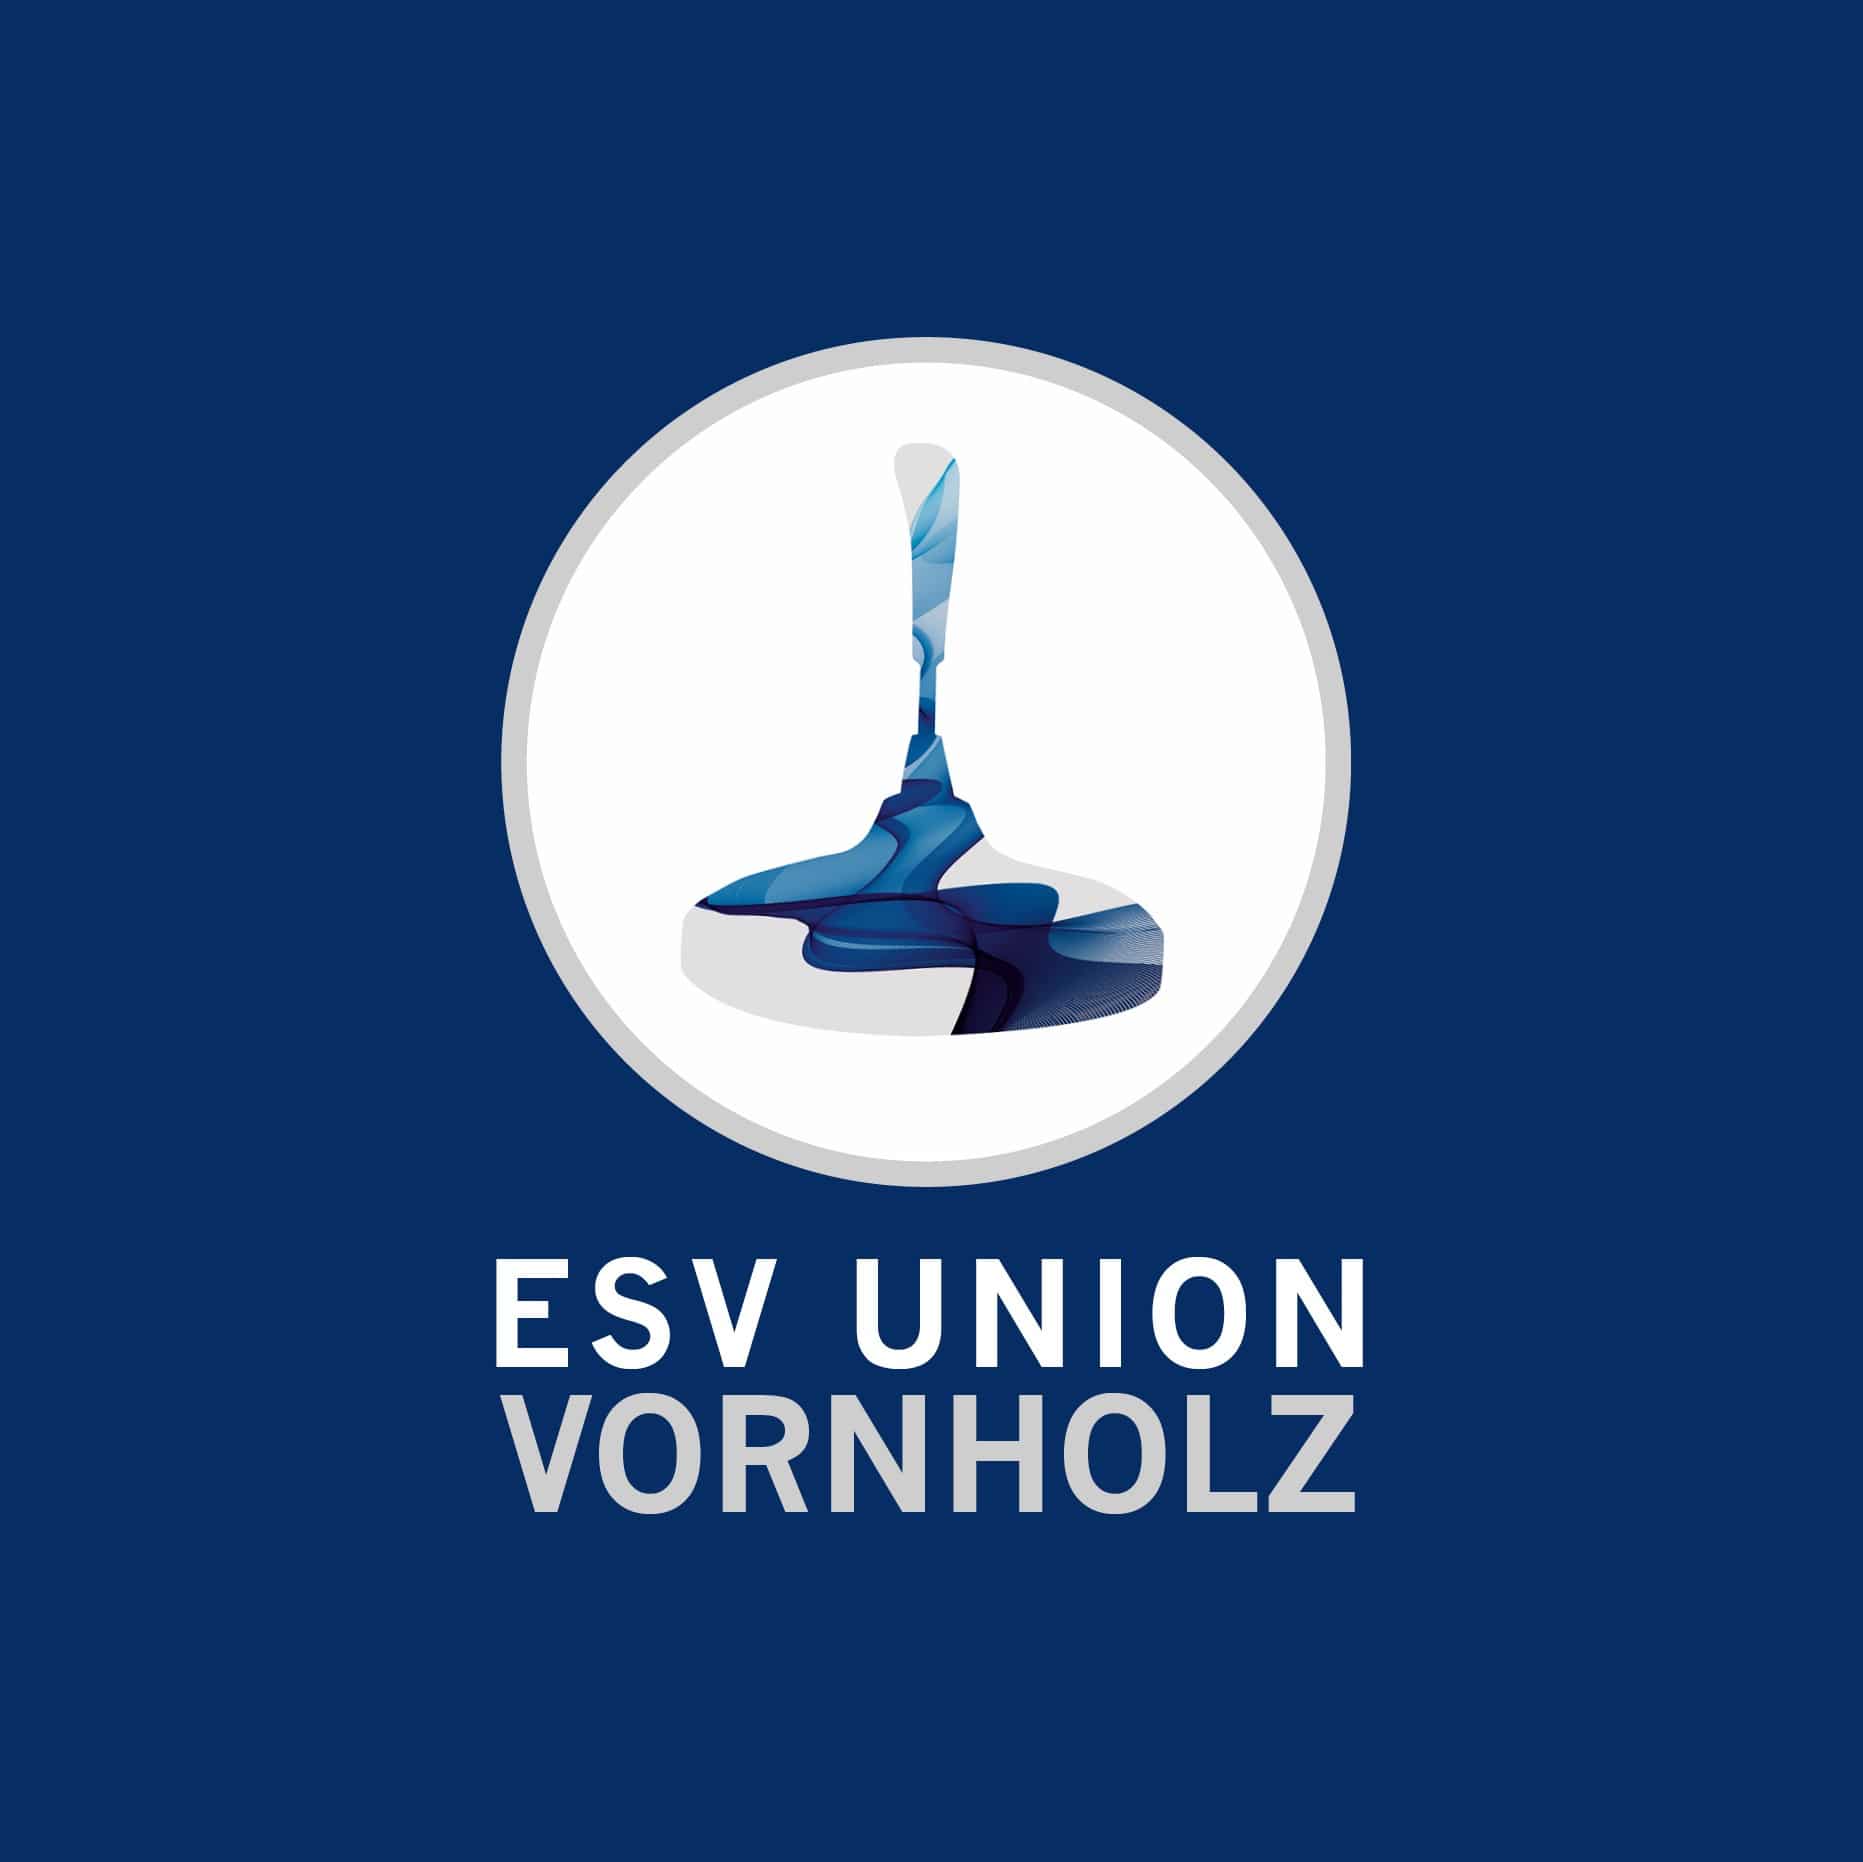 ESV Union Vornholz